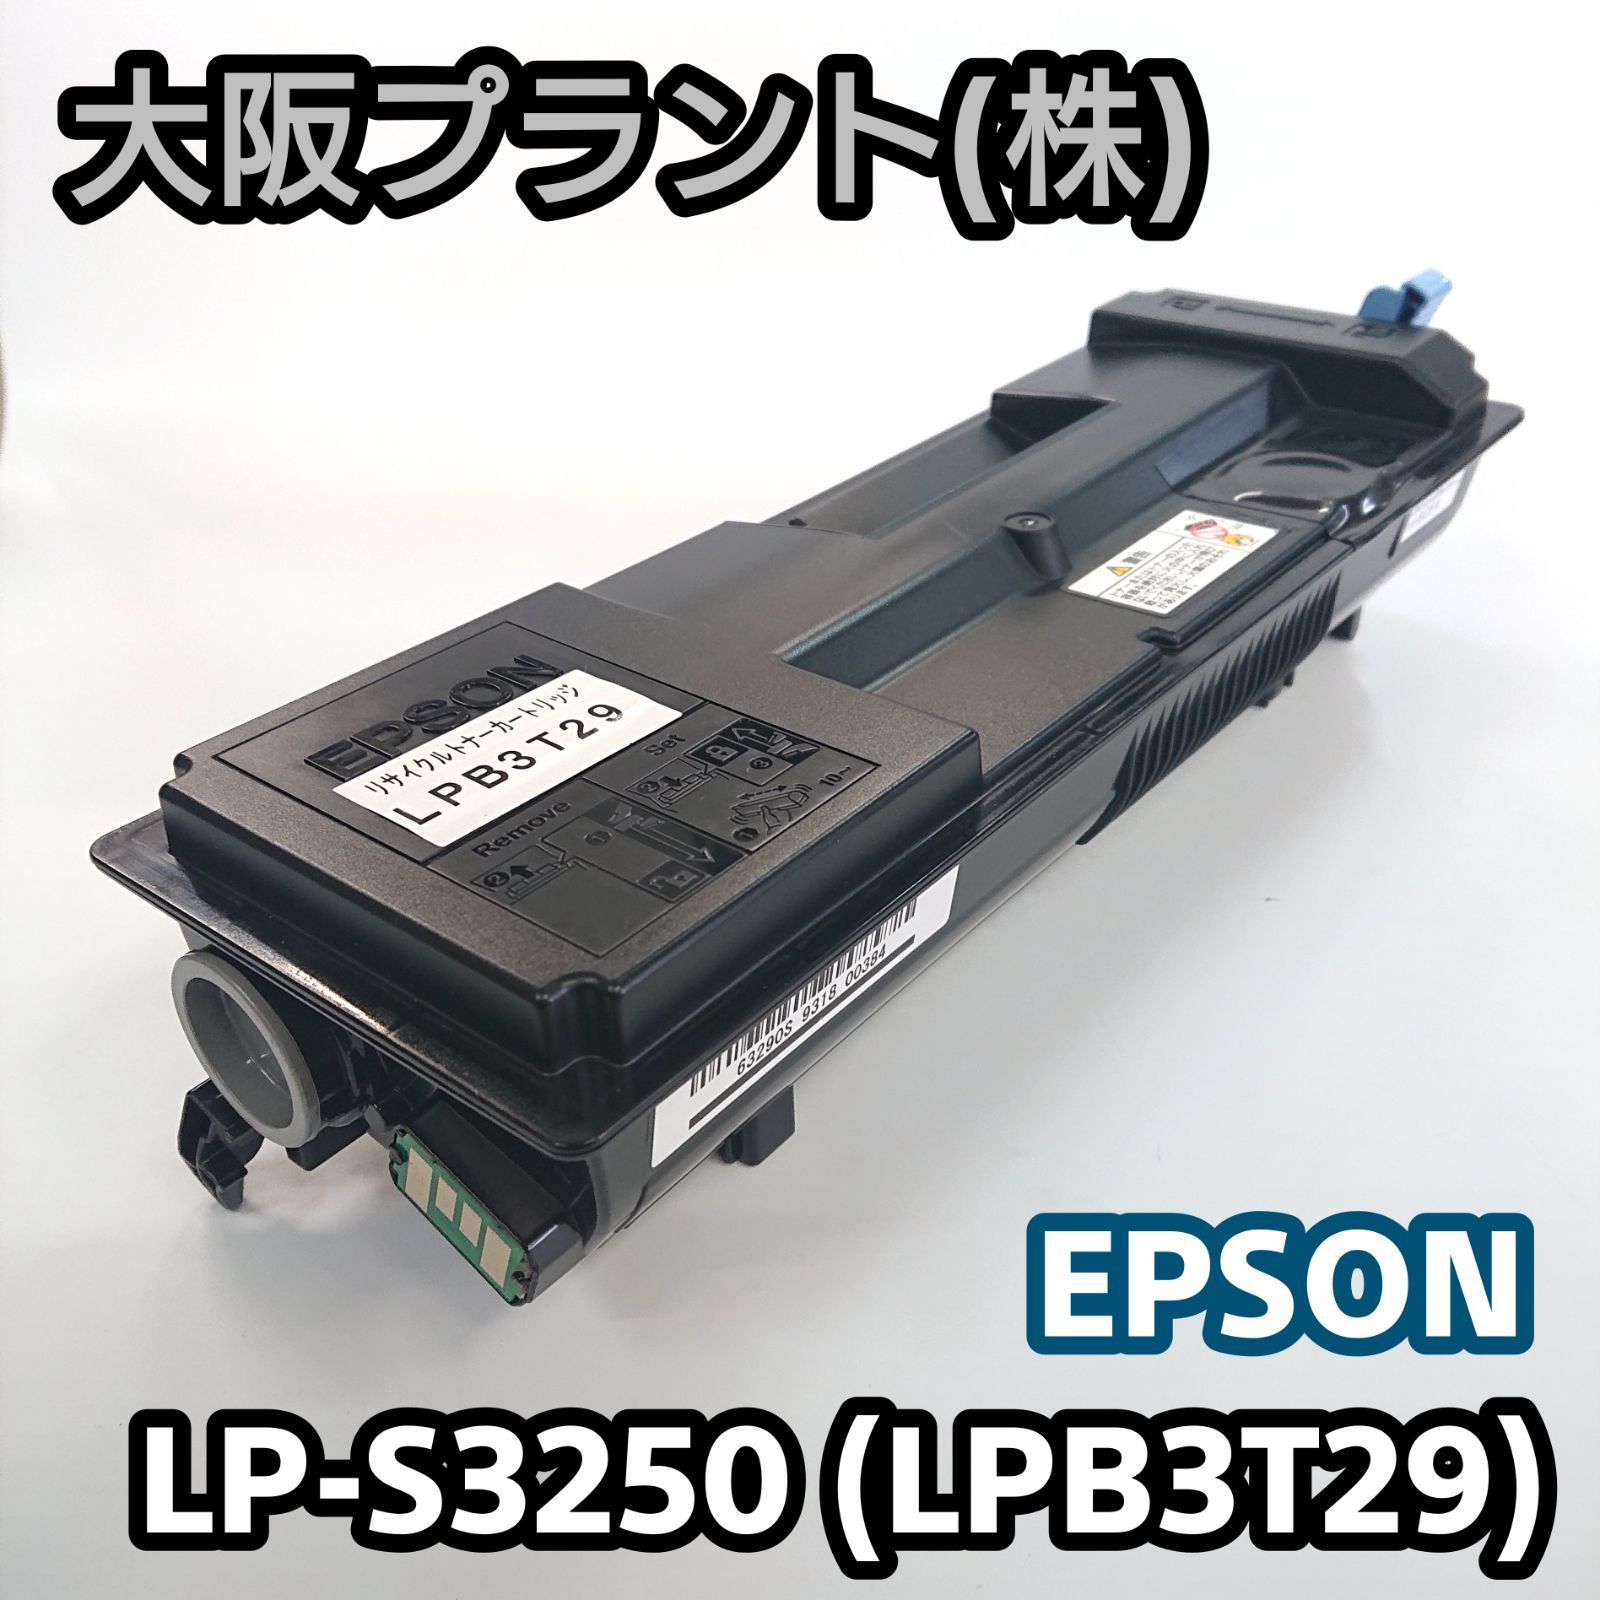 直売取扱店 【大阪プラント】再生 エプソン LP-S3250(LPB3T29) No.01